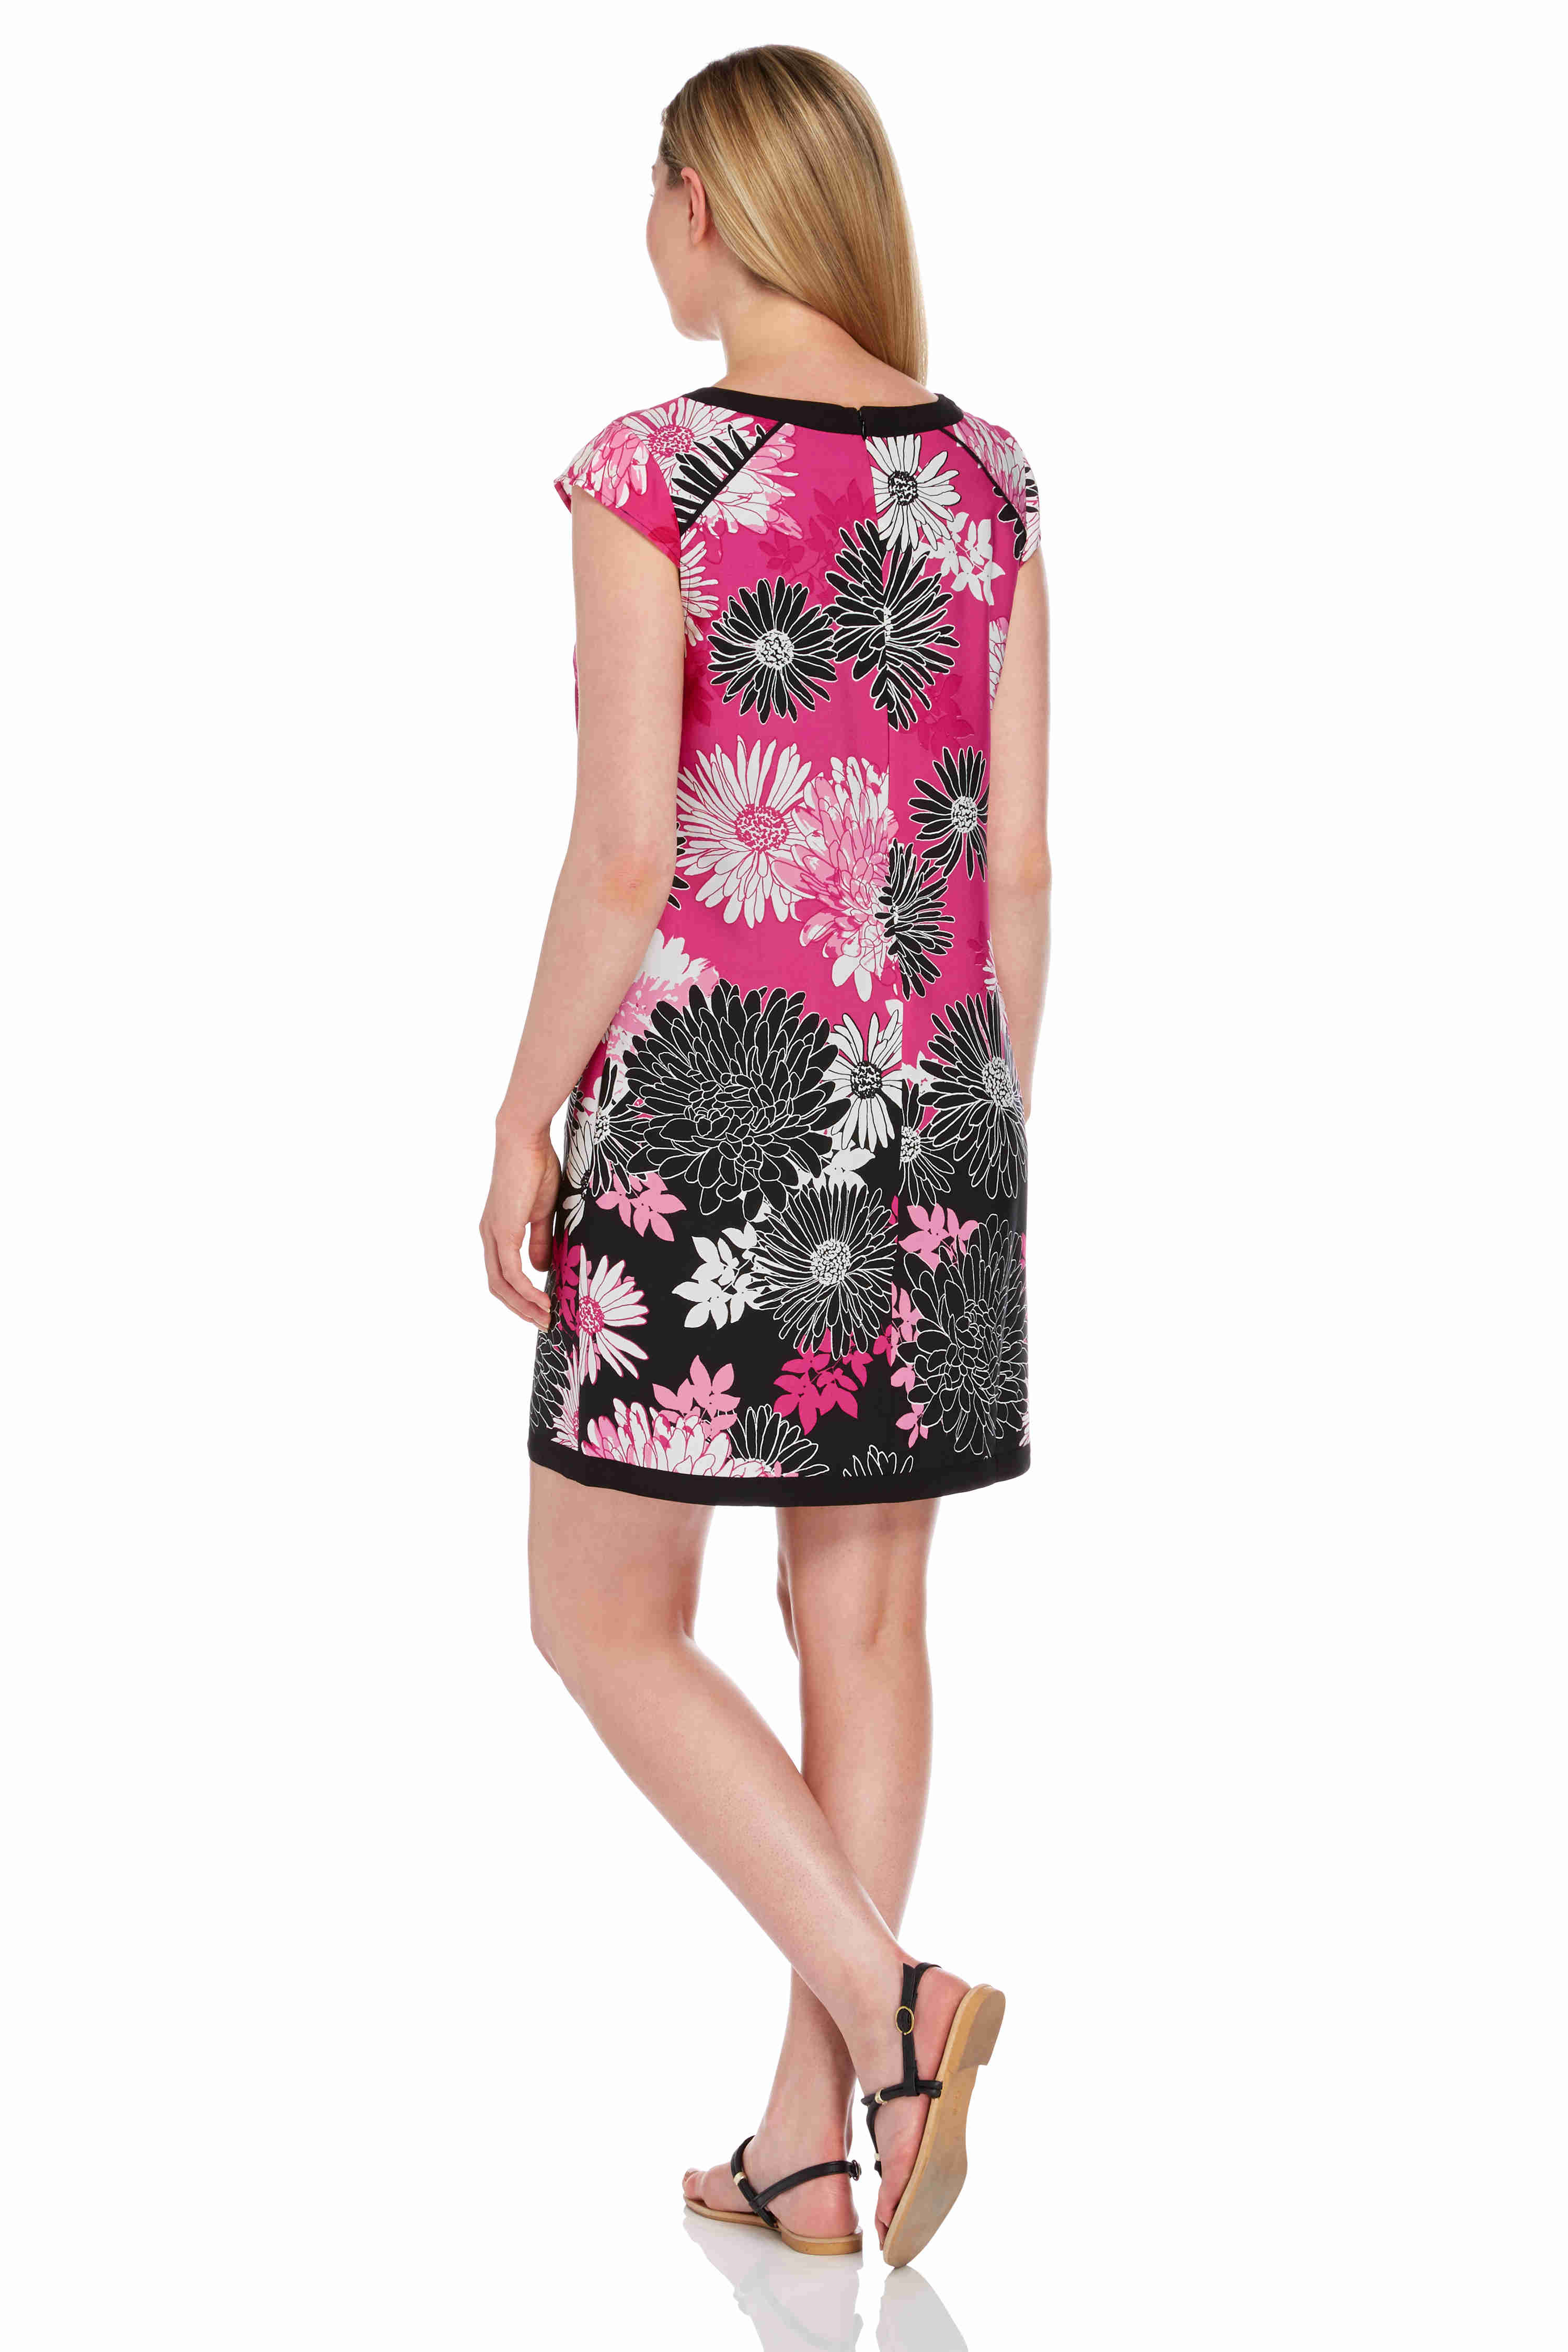 PINK Floral Print Shift Dress , Image 2 of 5